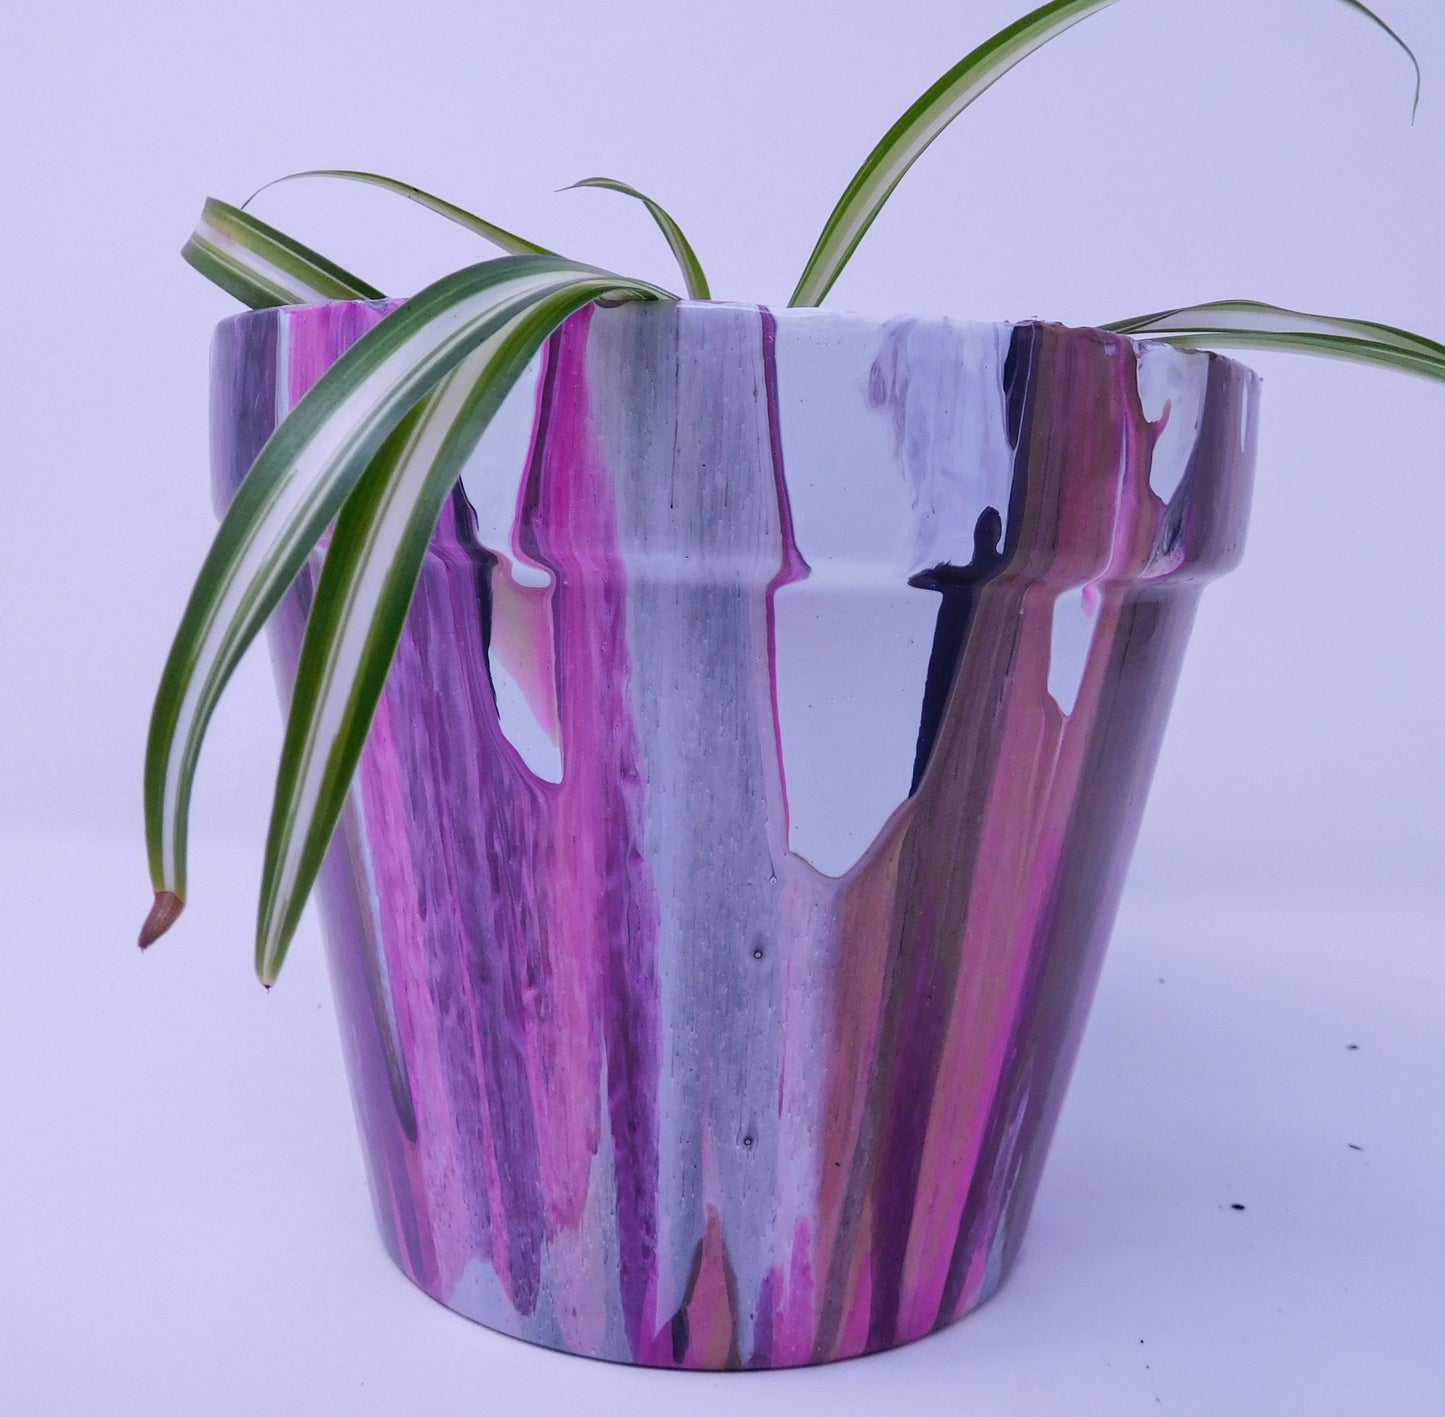 Acrylic pour terracotta pots